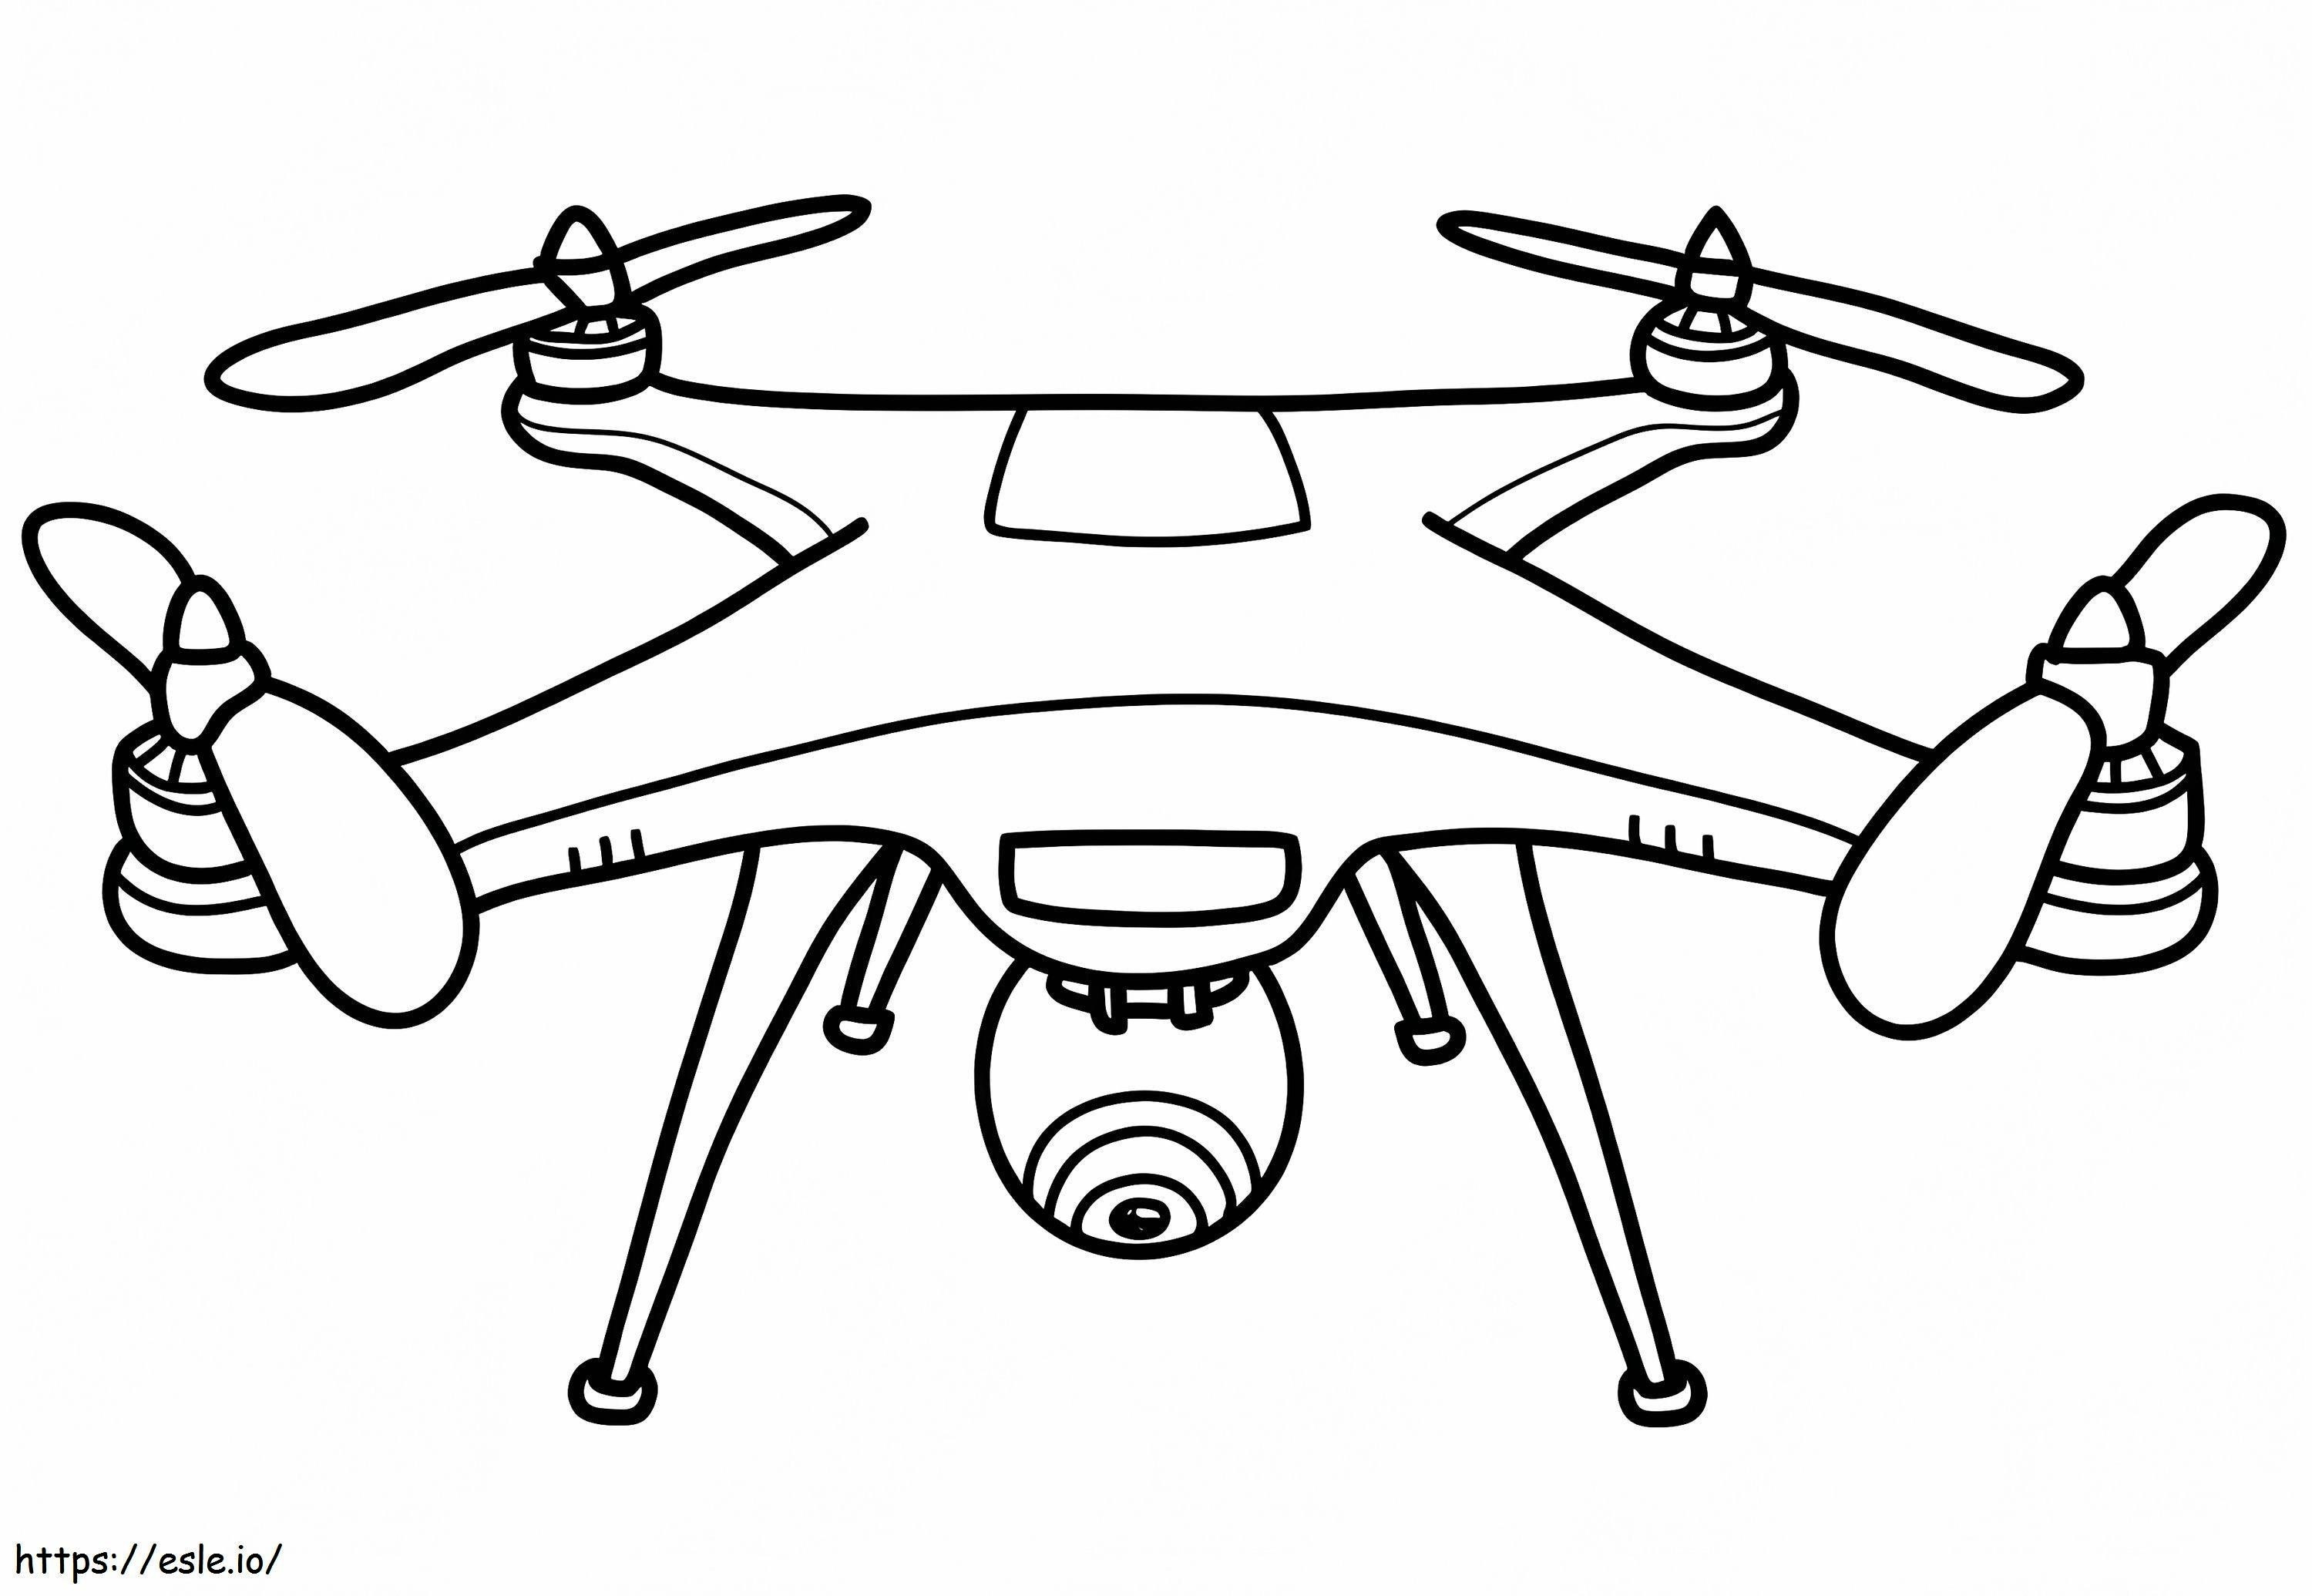 Drohne mit Kamera ausmalbilder